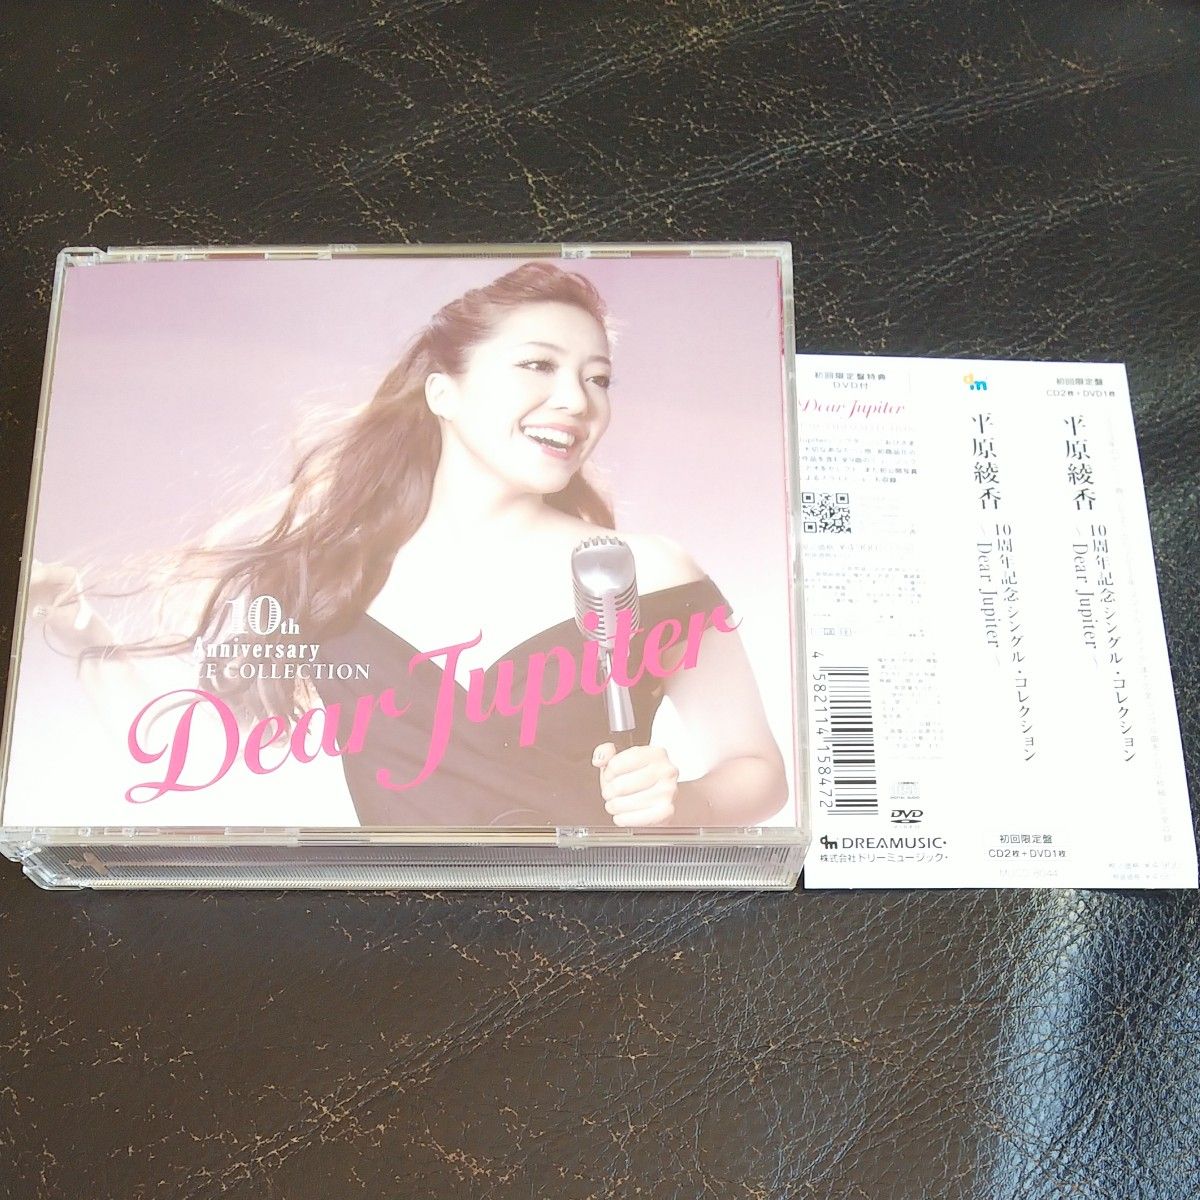 10周年記念シングルコレクション~Dear Jupiter~ (初回生産限定盤) (DVD付)